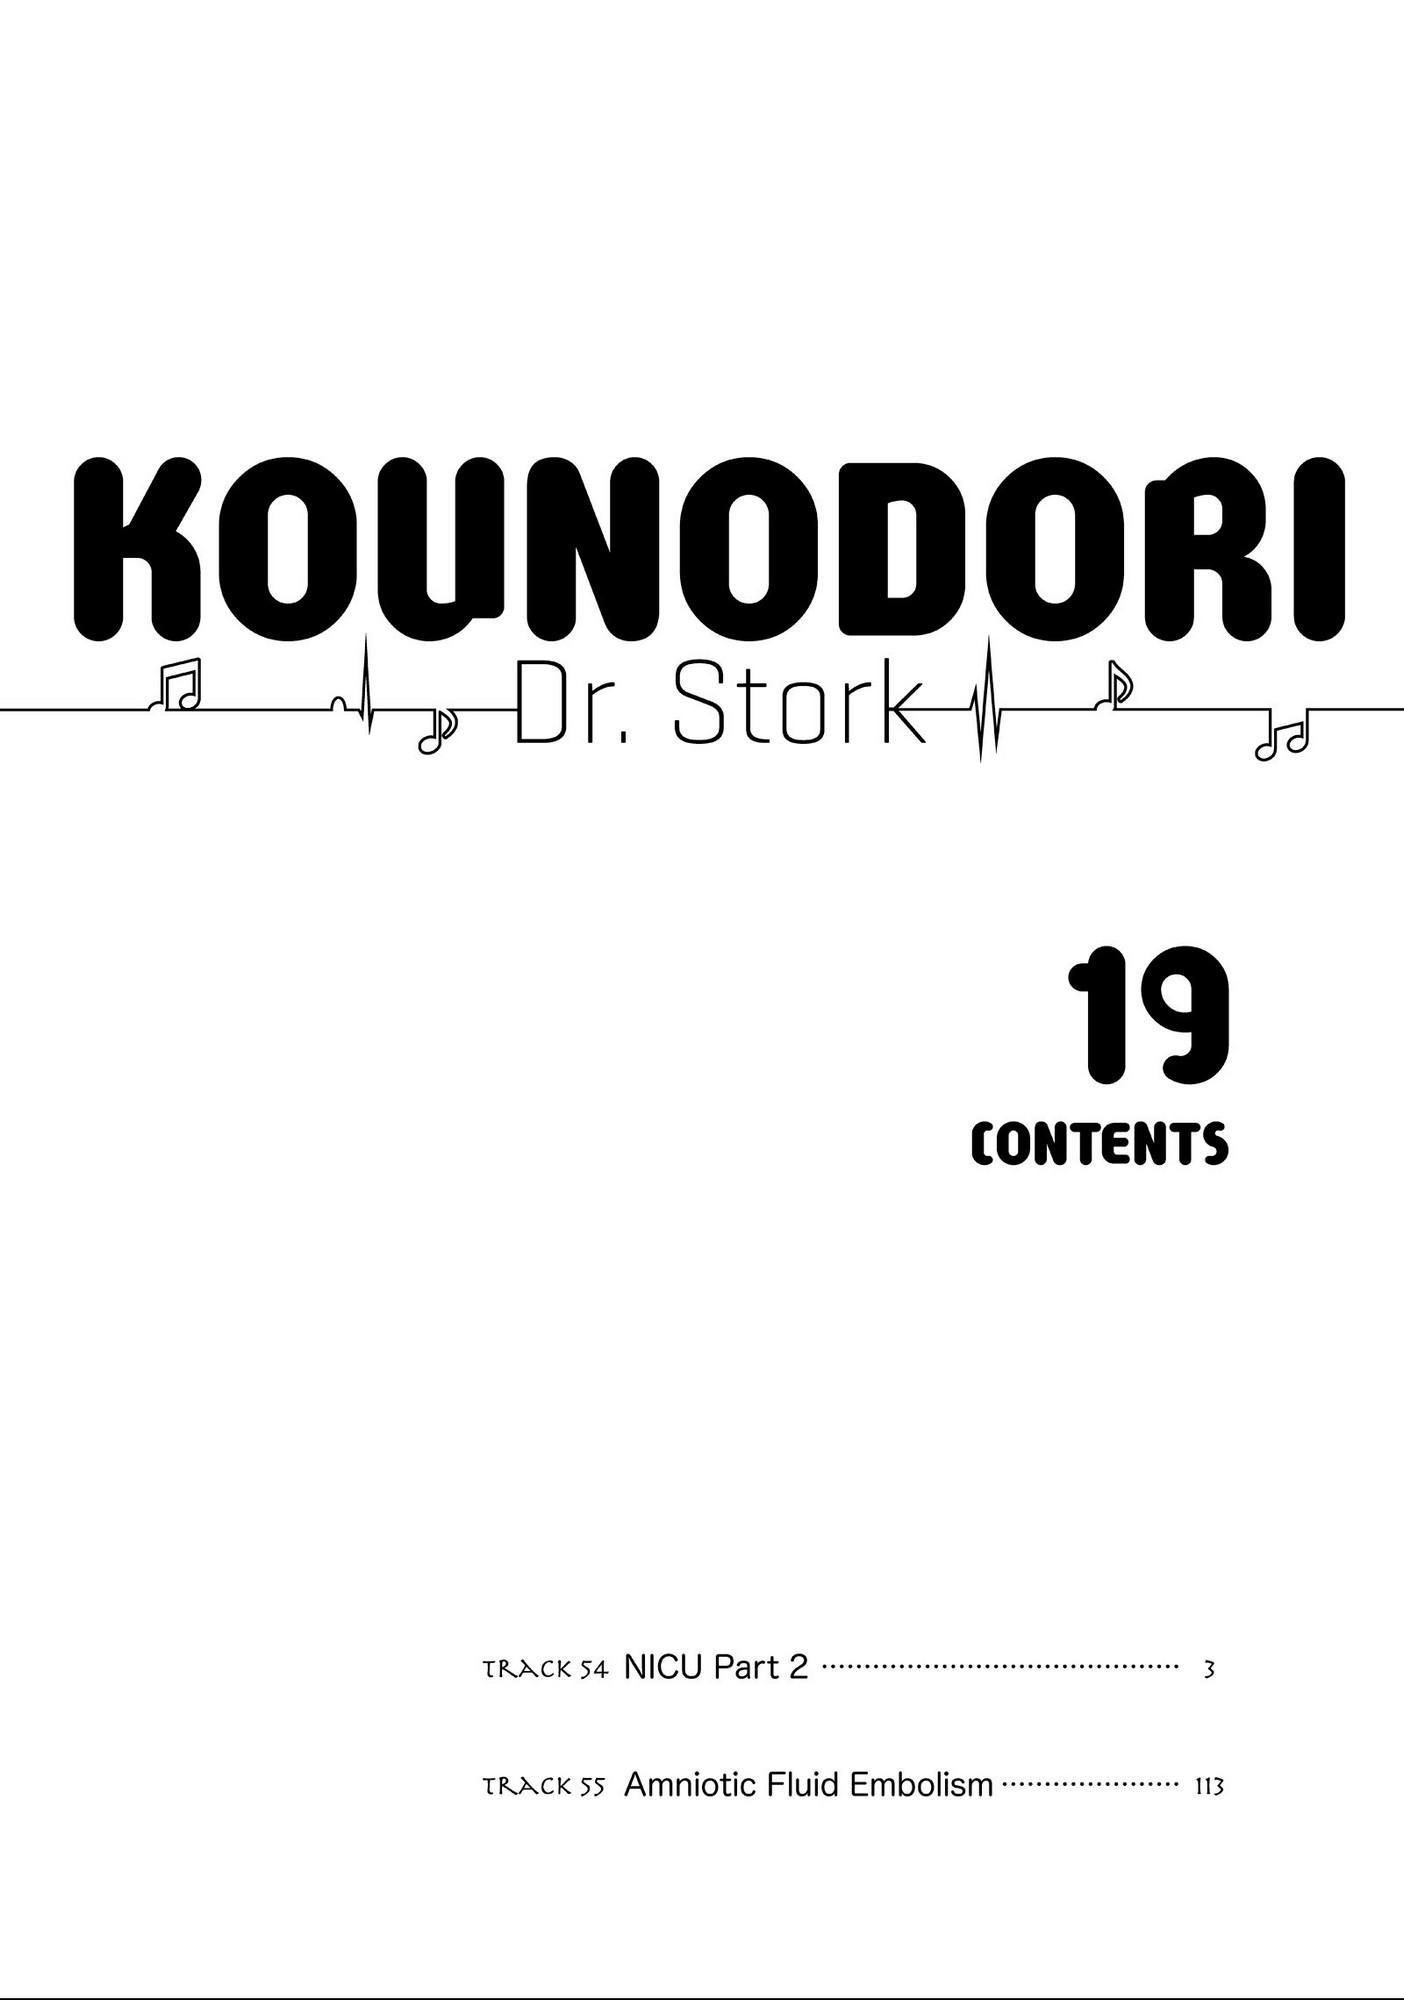 Kounodori - The Stork - episode 88 - 2